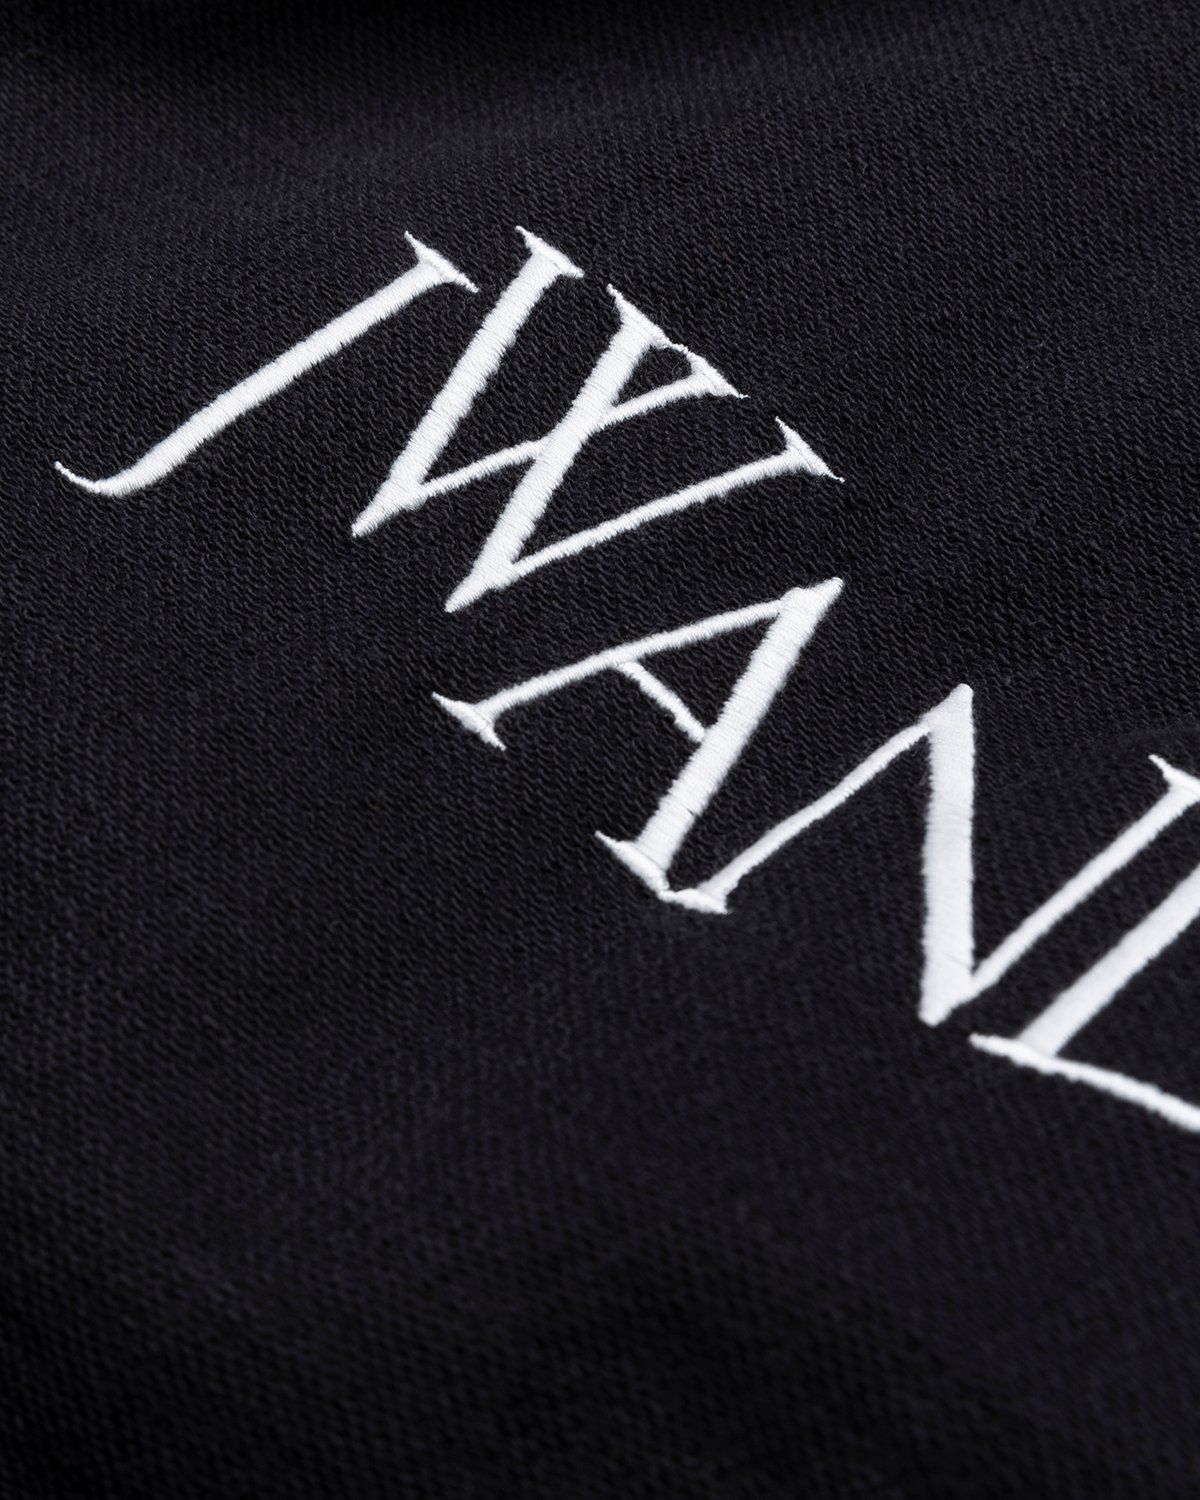 J.W. Anderson – Inside Out Contrast Sweatshirt Black - Sweats - Black - Image 6